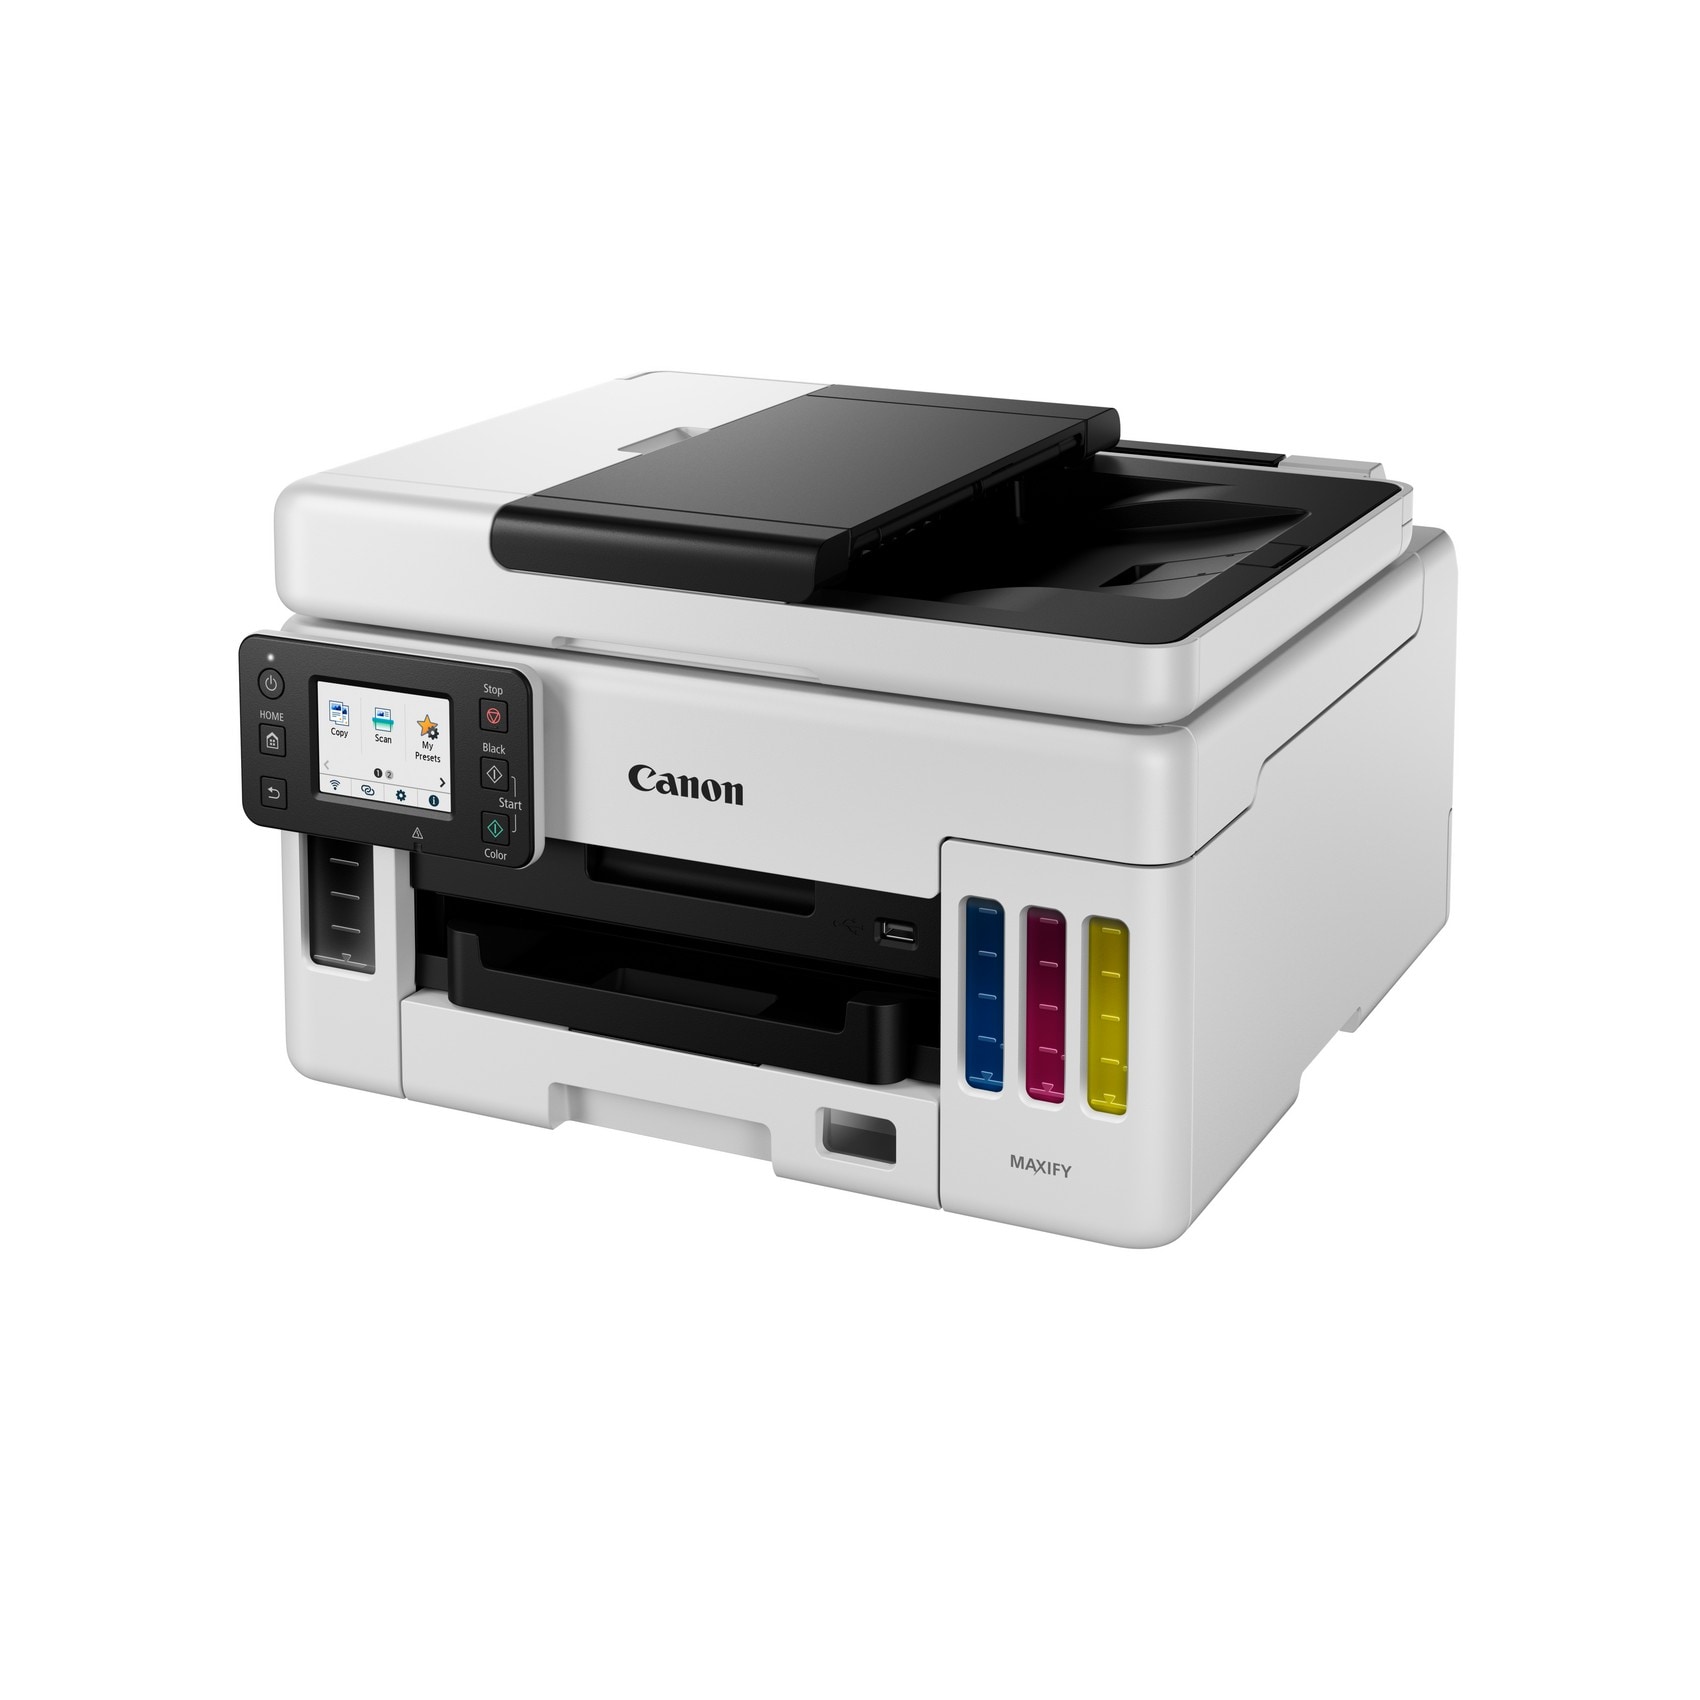 ++ Multifunktionsdrucker Scanner Kopierer MAXIFY Canon LAN WLAN GX6050 Cyberport USB